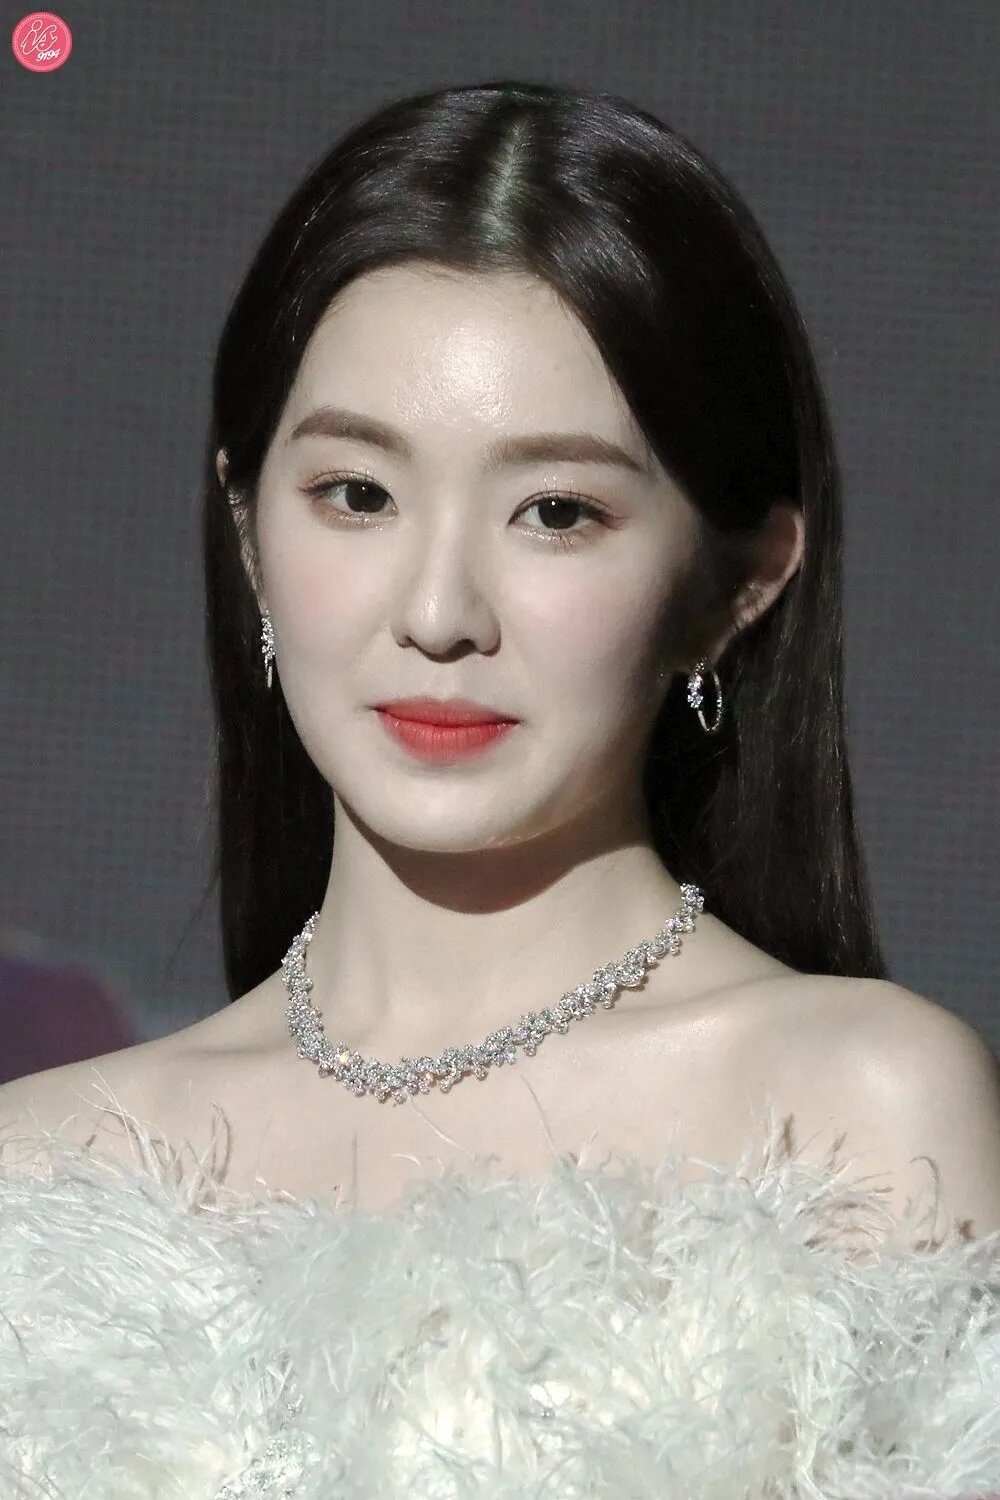 191227 Red Velvet's Irene at 2019 KBS Gayo Daechukje | Kpopping